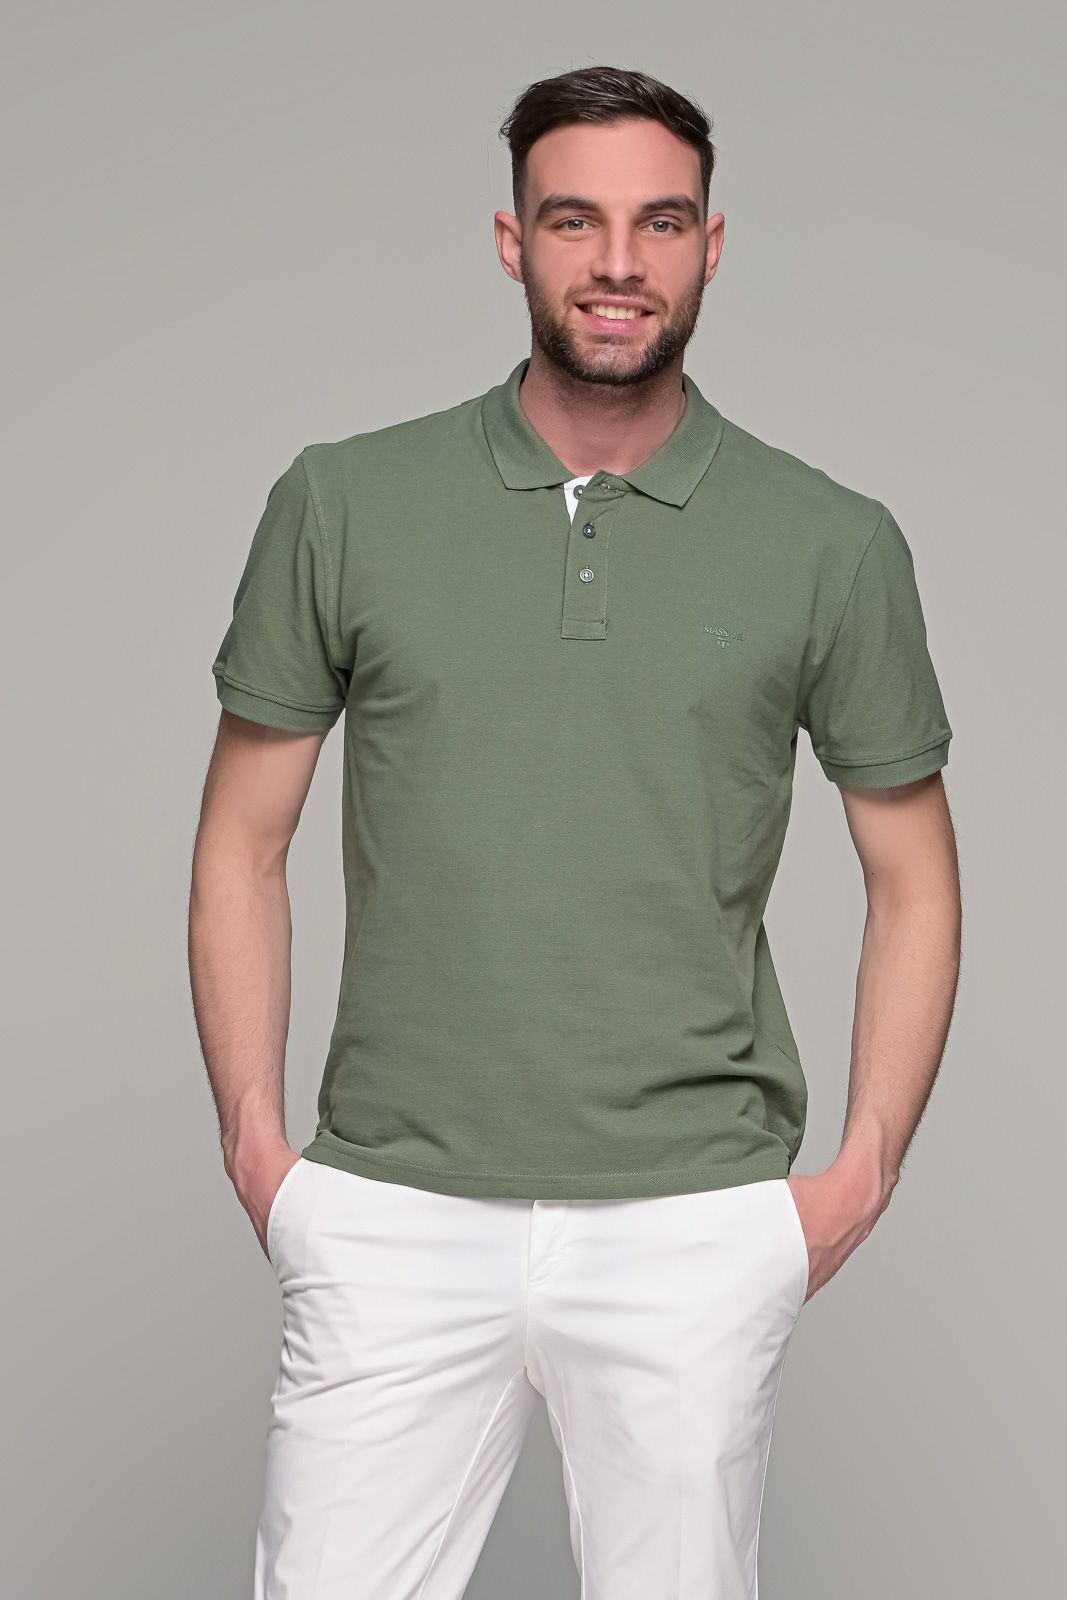 Πράσινο χακί ανδρικό πόλο μπλουζάκι MASSARO με λευκή πατιλέτα - Regular fit